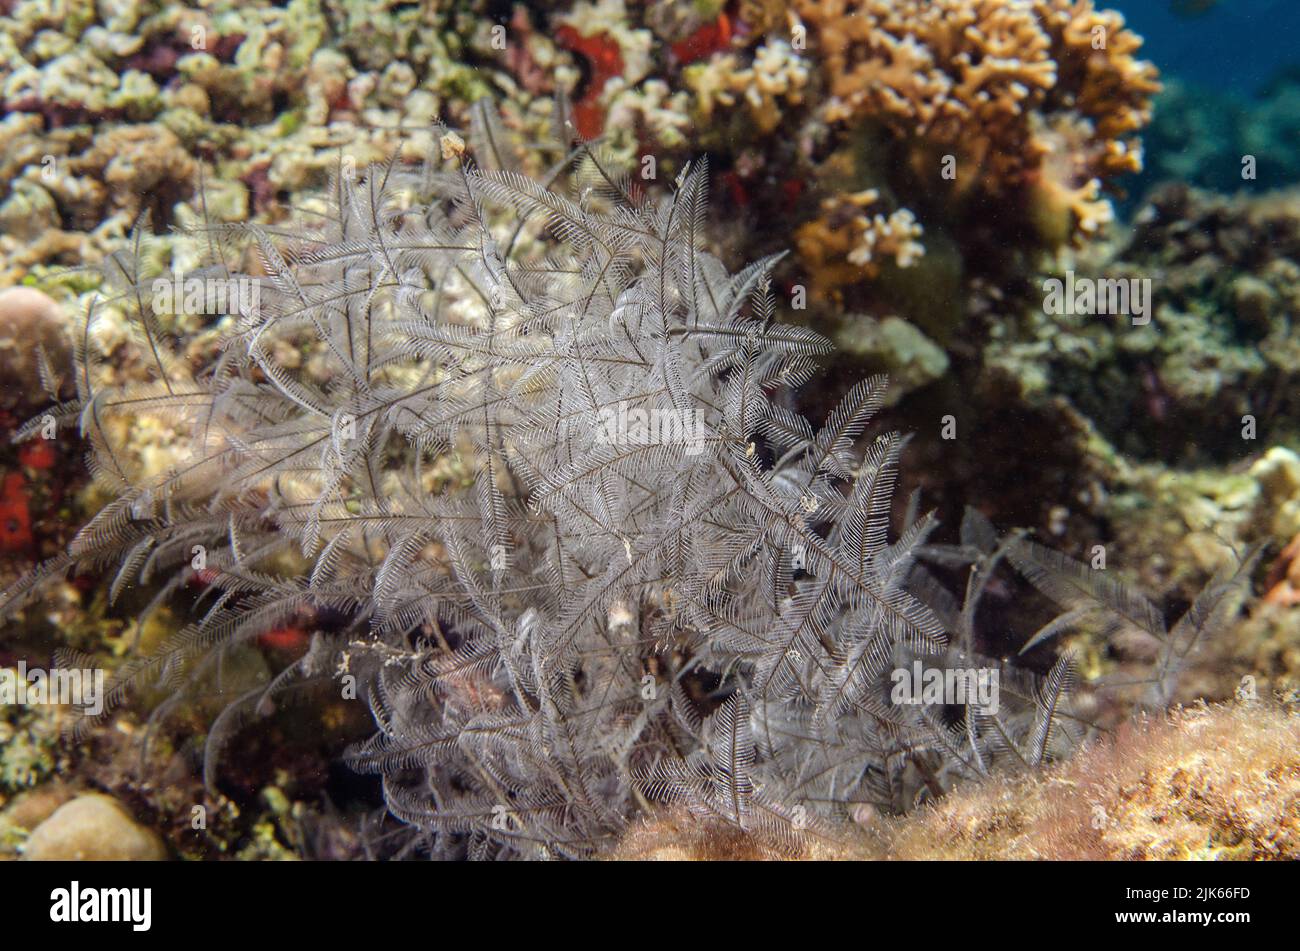 Hydrozoaire de stining, Aglaophenia cupressina, Plamulariidae, Anilao, Indo-océan pacifique, Philippines, Asie Banque D'Images